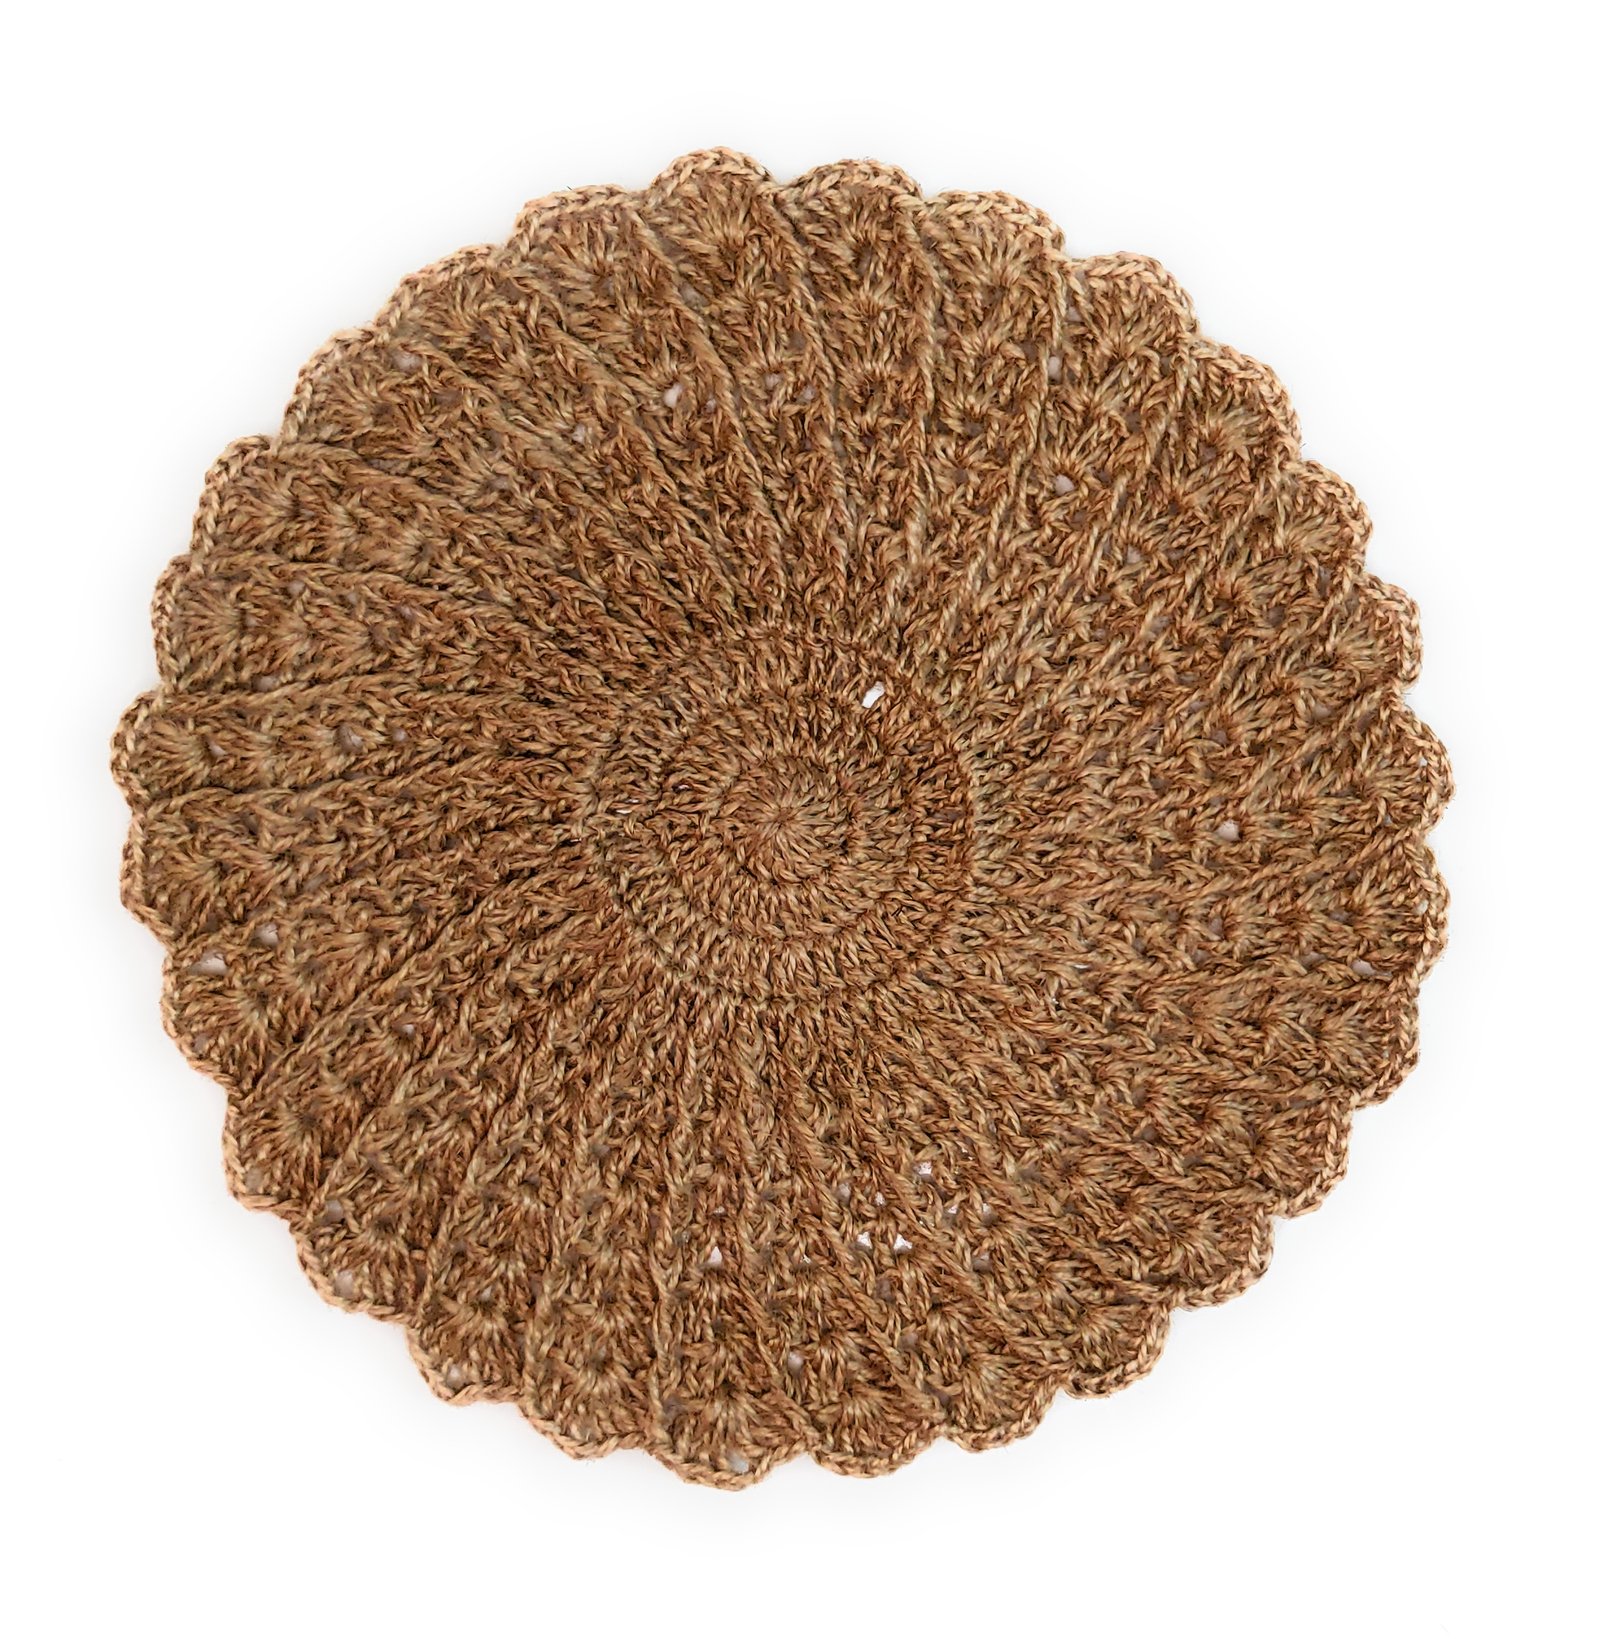 Divulge Crochet round table mats instagram mats